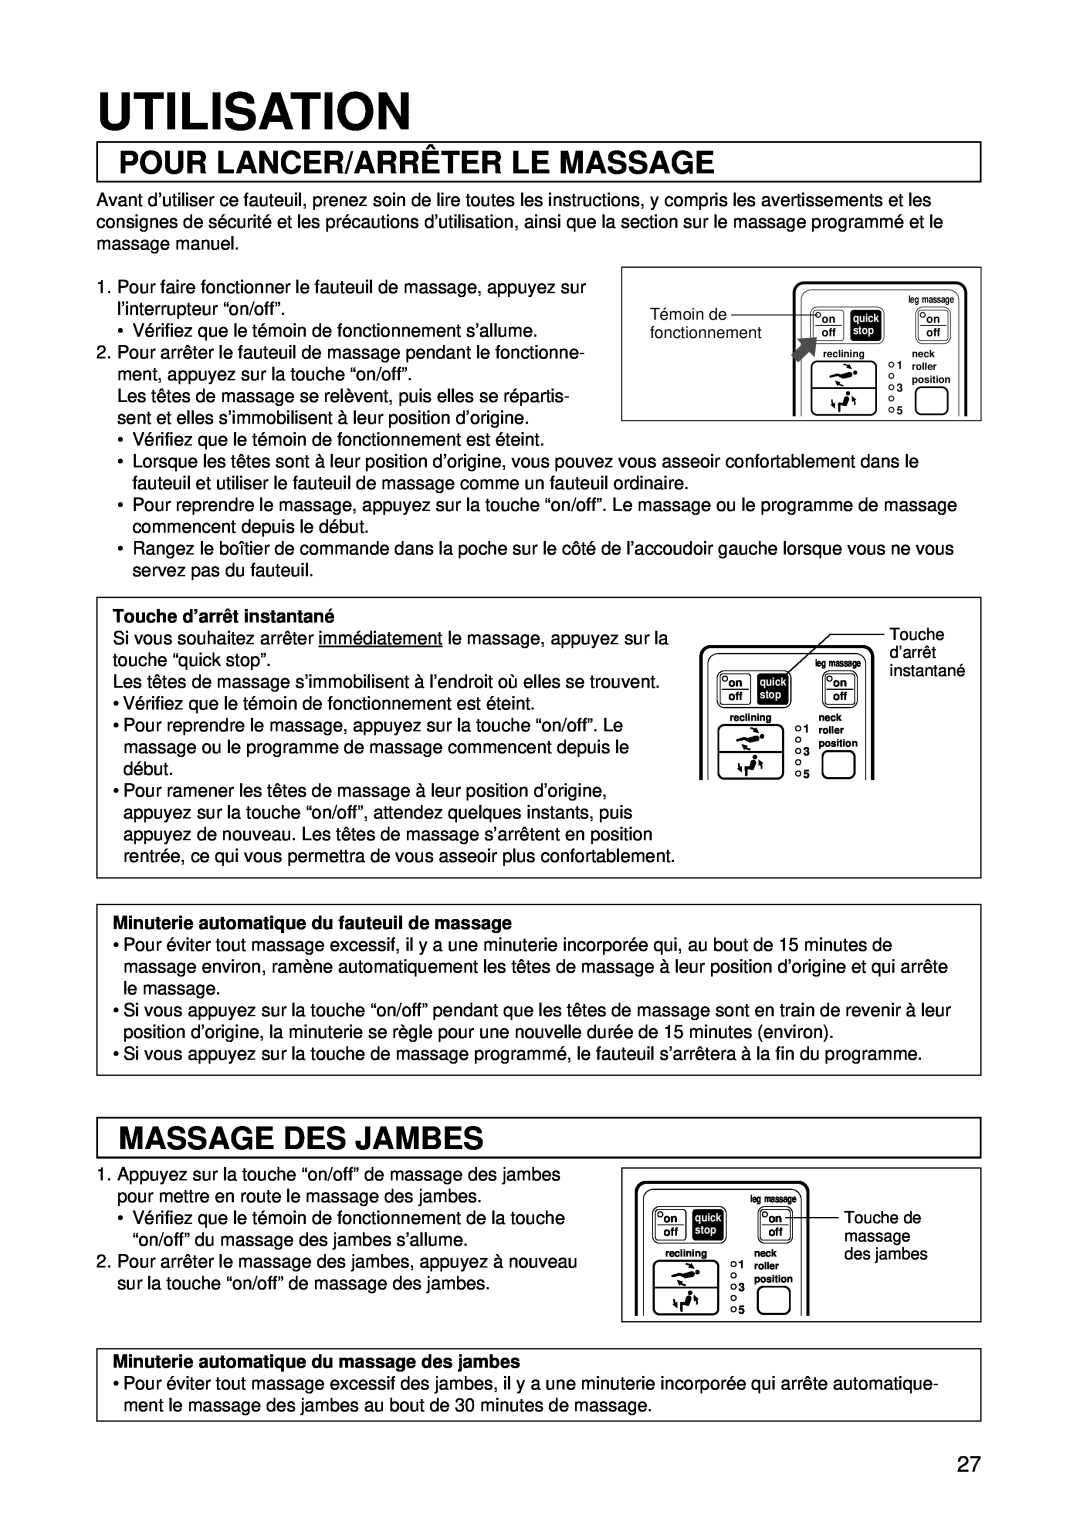 Panasonic EP1015 manuel dutilisation Utilisation, Pour Lancer/Arrê Ter Le Massage, Massage Des Jambes 